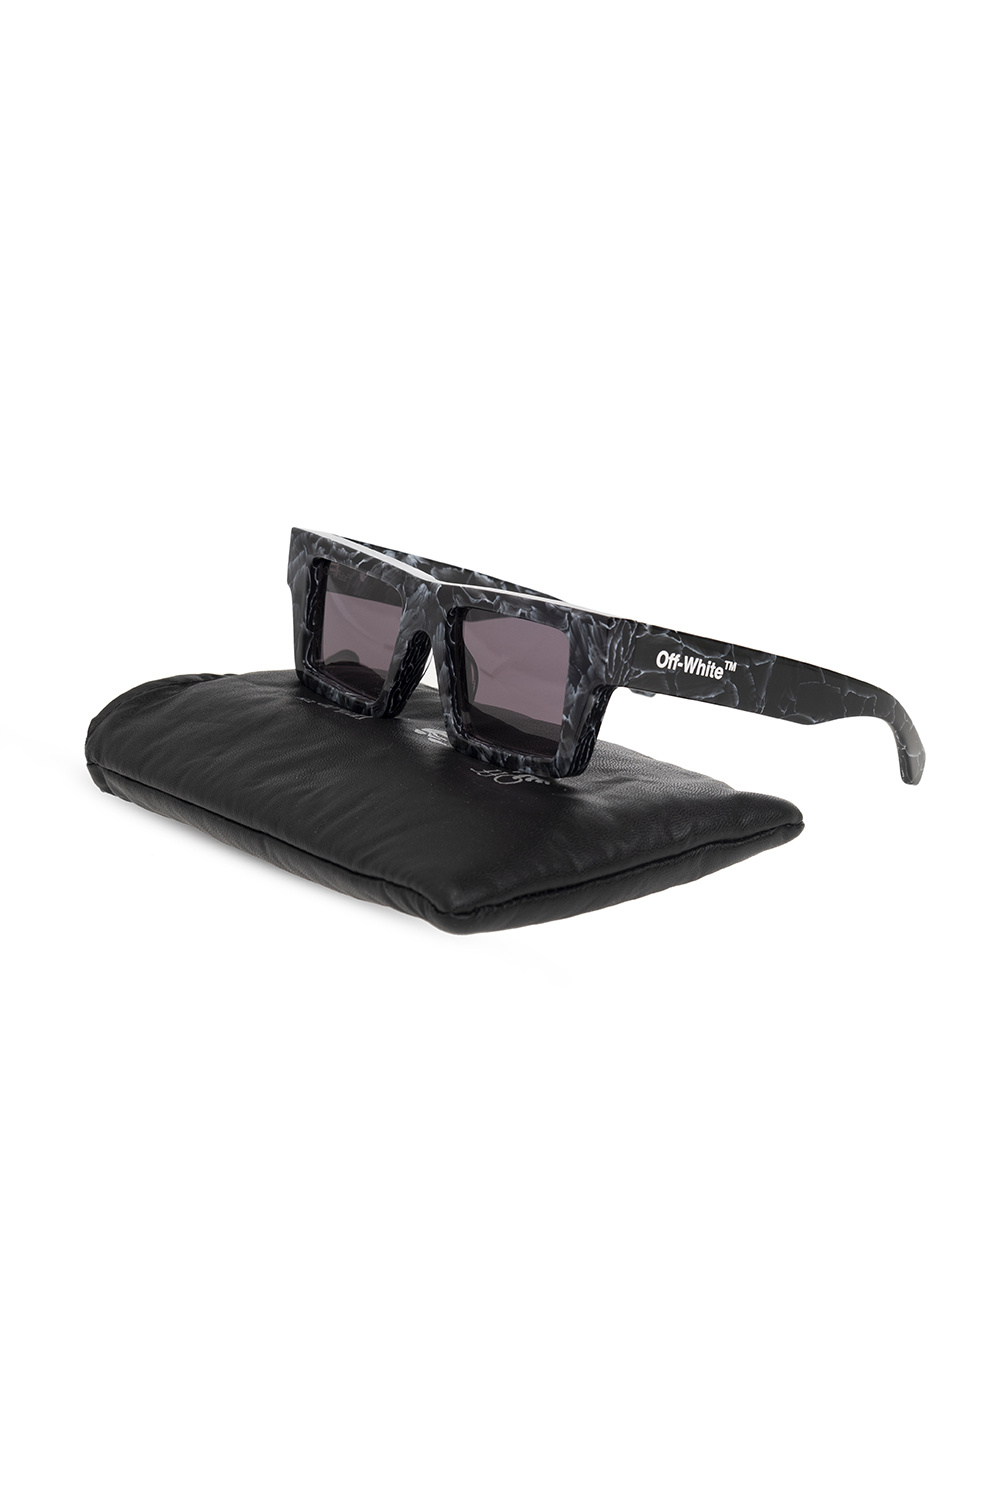 Buy Off-White NASSAU OERI017 8607 Sunglasses